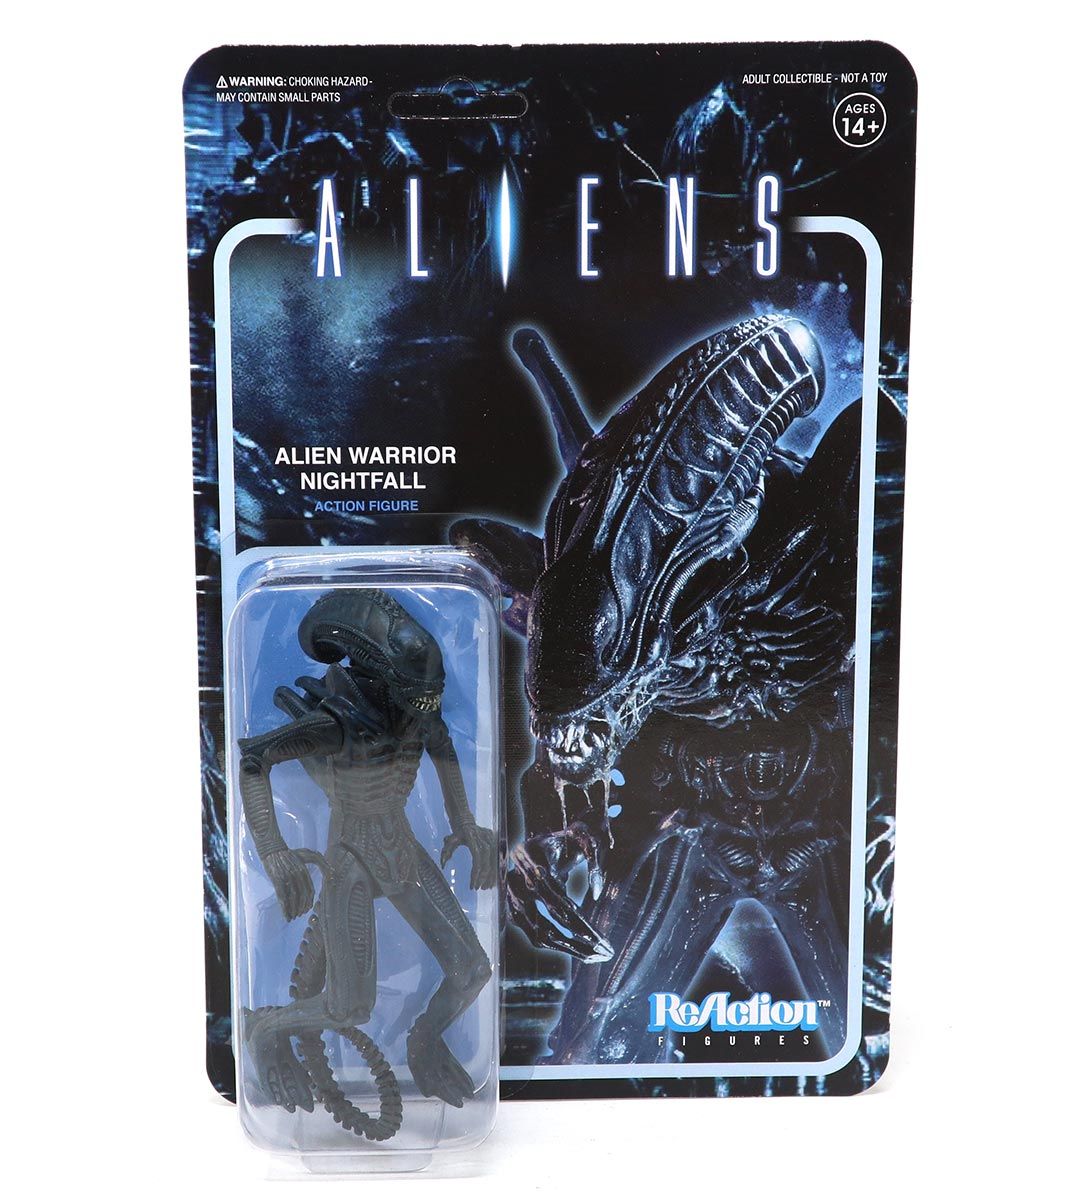 Alien Warrior Nightfall - Aliens - ReAction figure